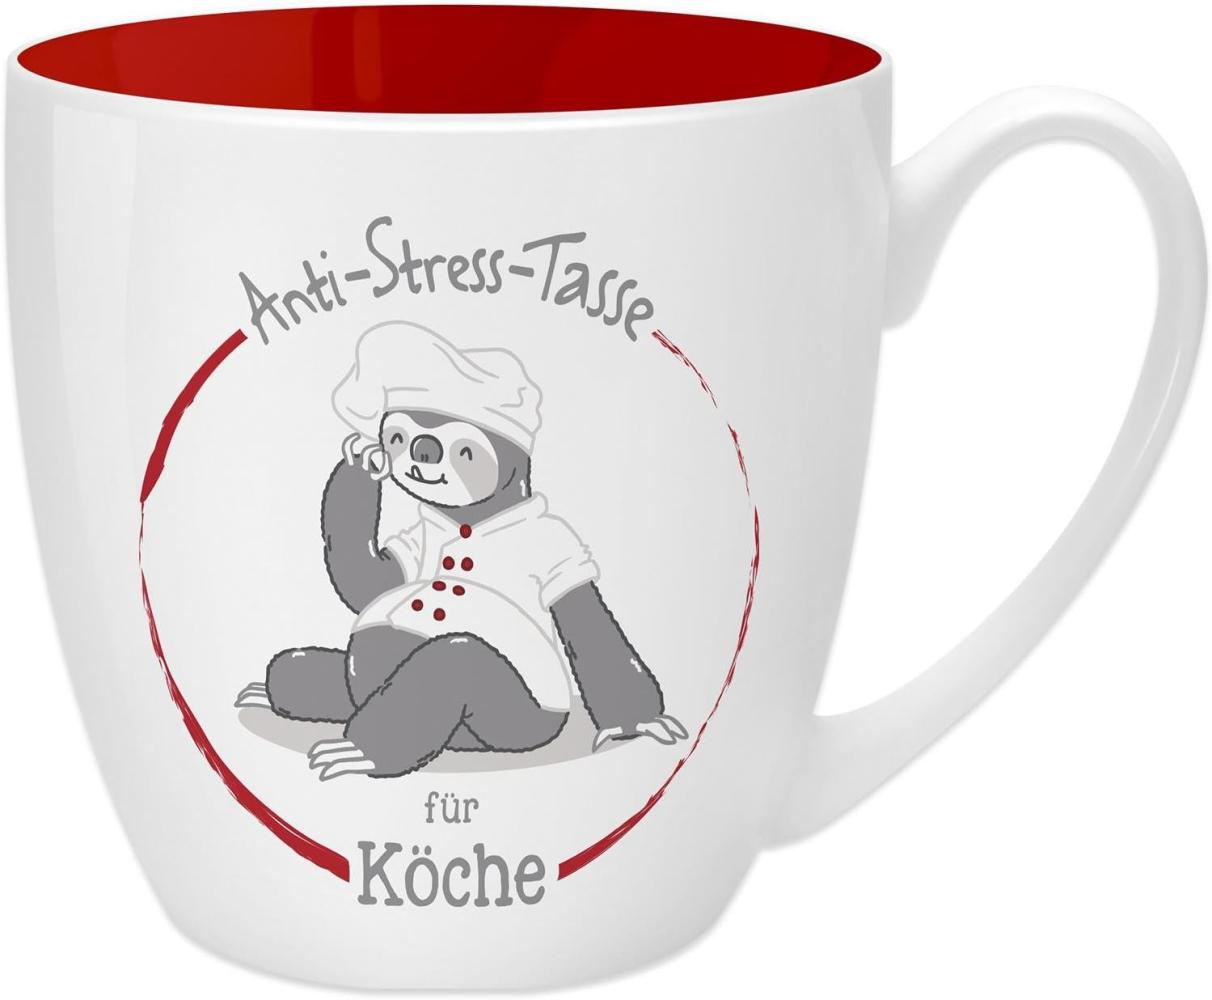 GRUSS & CO Anti-Stress-Tasse Motiv "Köche" | Tasse mit Spruch, 45 cl, New Bone China | Geschenk lustig | 45493 Bild 1